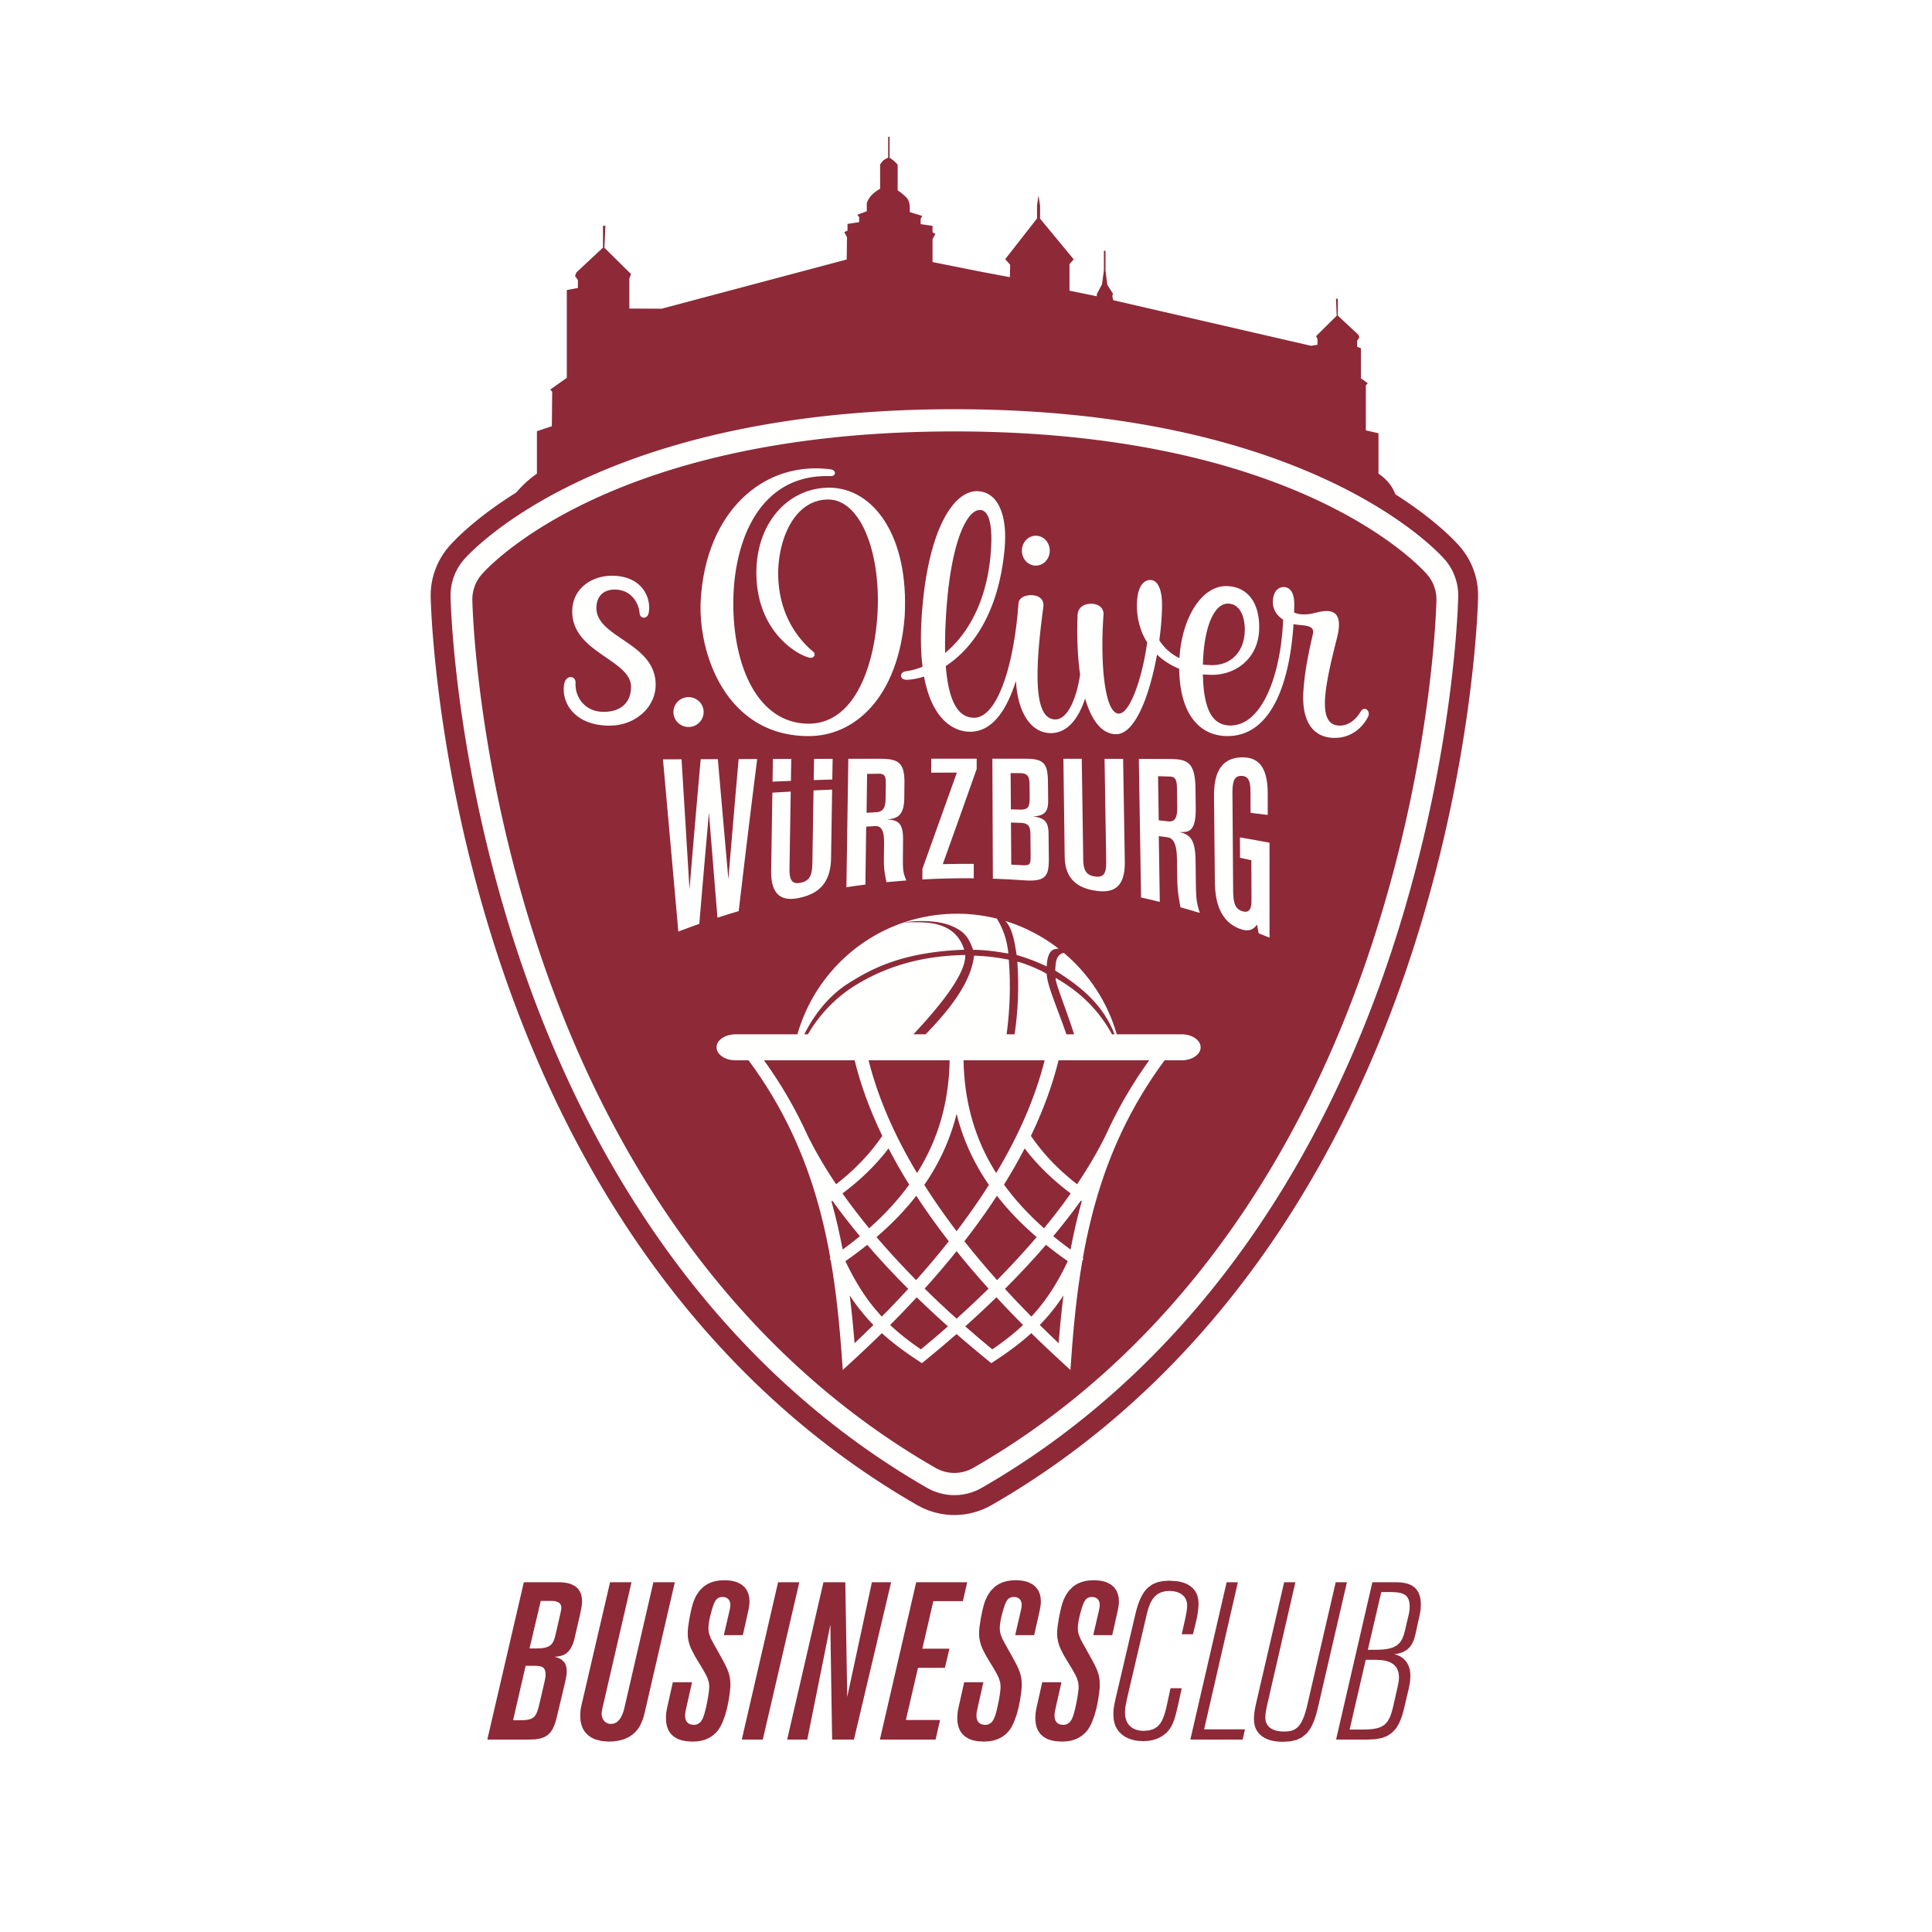 s.Oliver Würzburg Business Club Logo